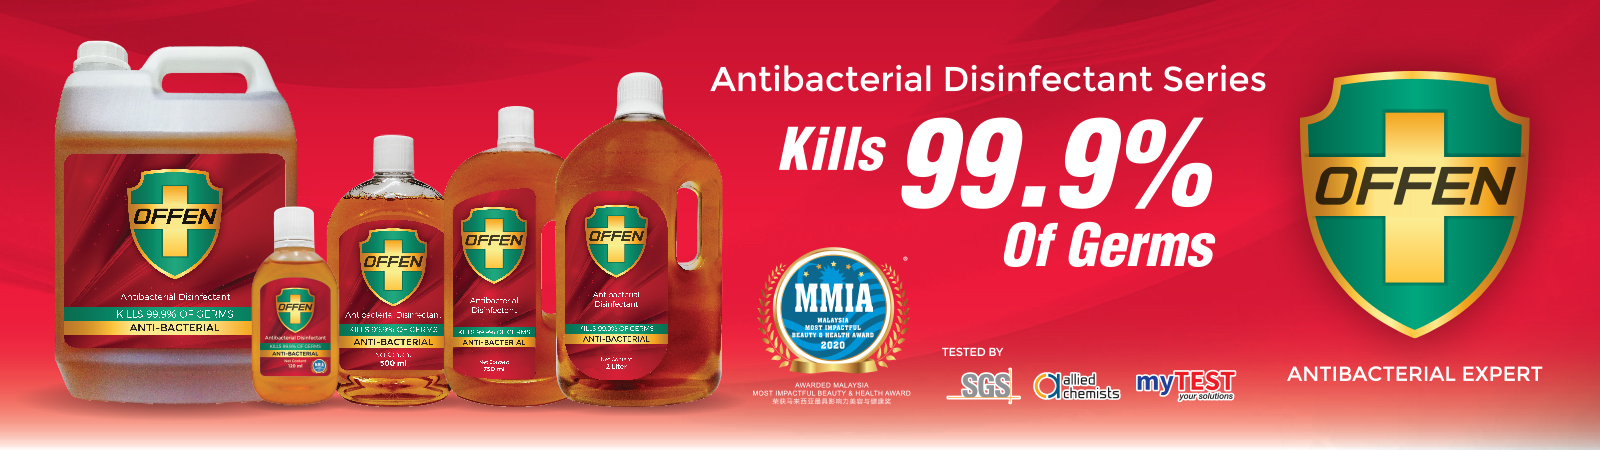 OFFEN Antibacterial Disinfectant